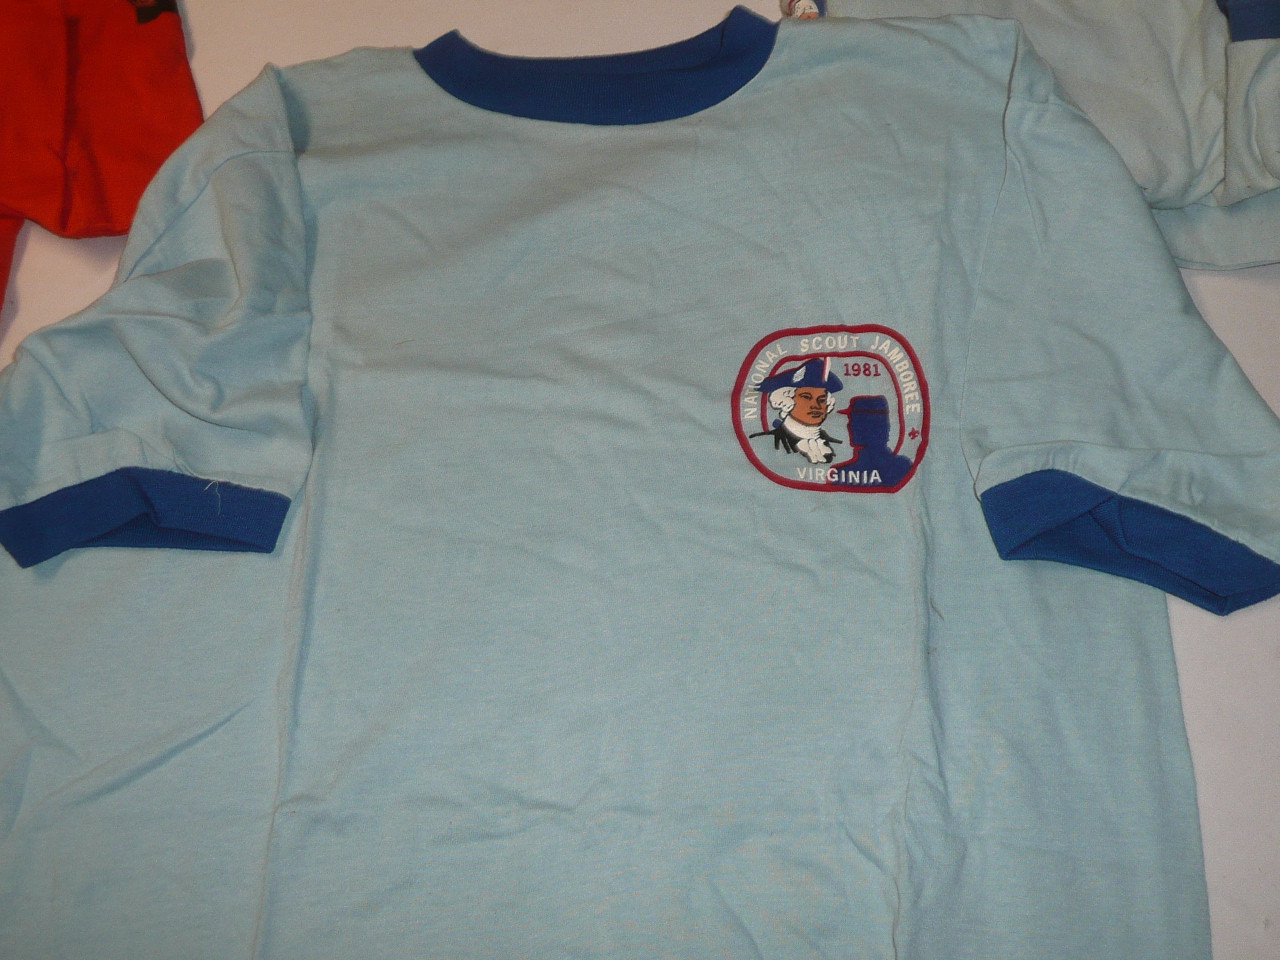 1981 National Jamboree Tee Shirt, Adult XL